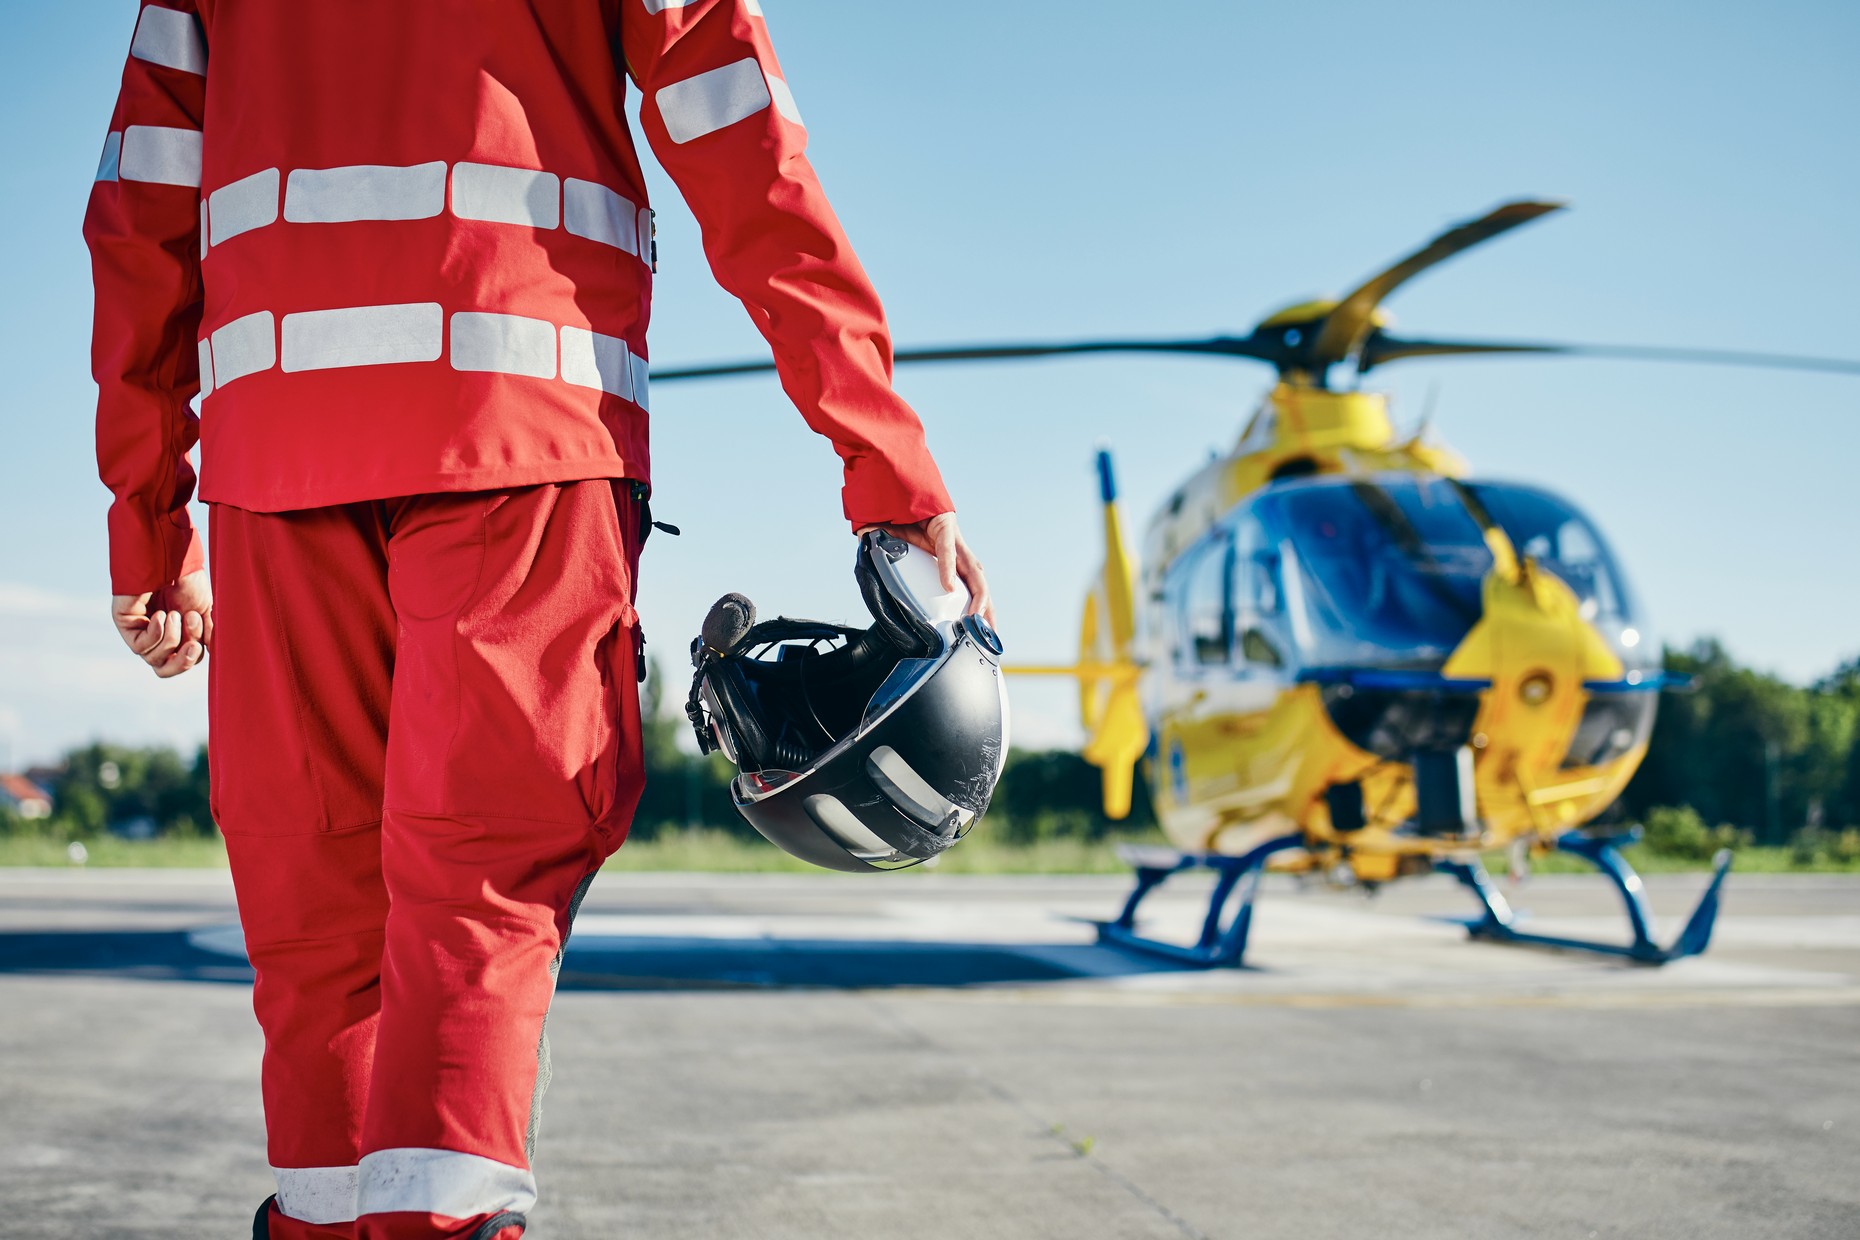 Rettungseinsatz mit Hubschrauber